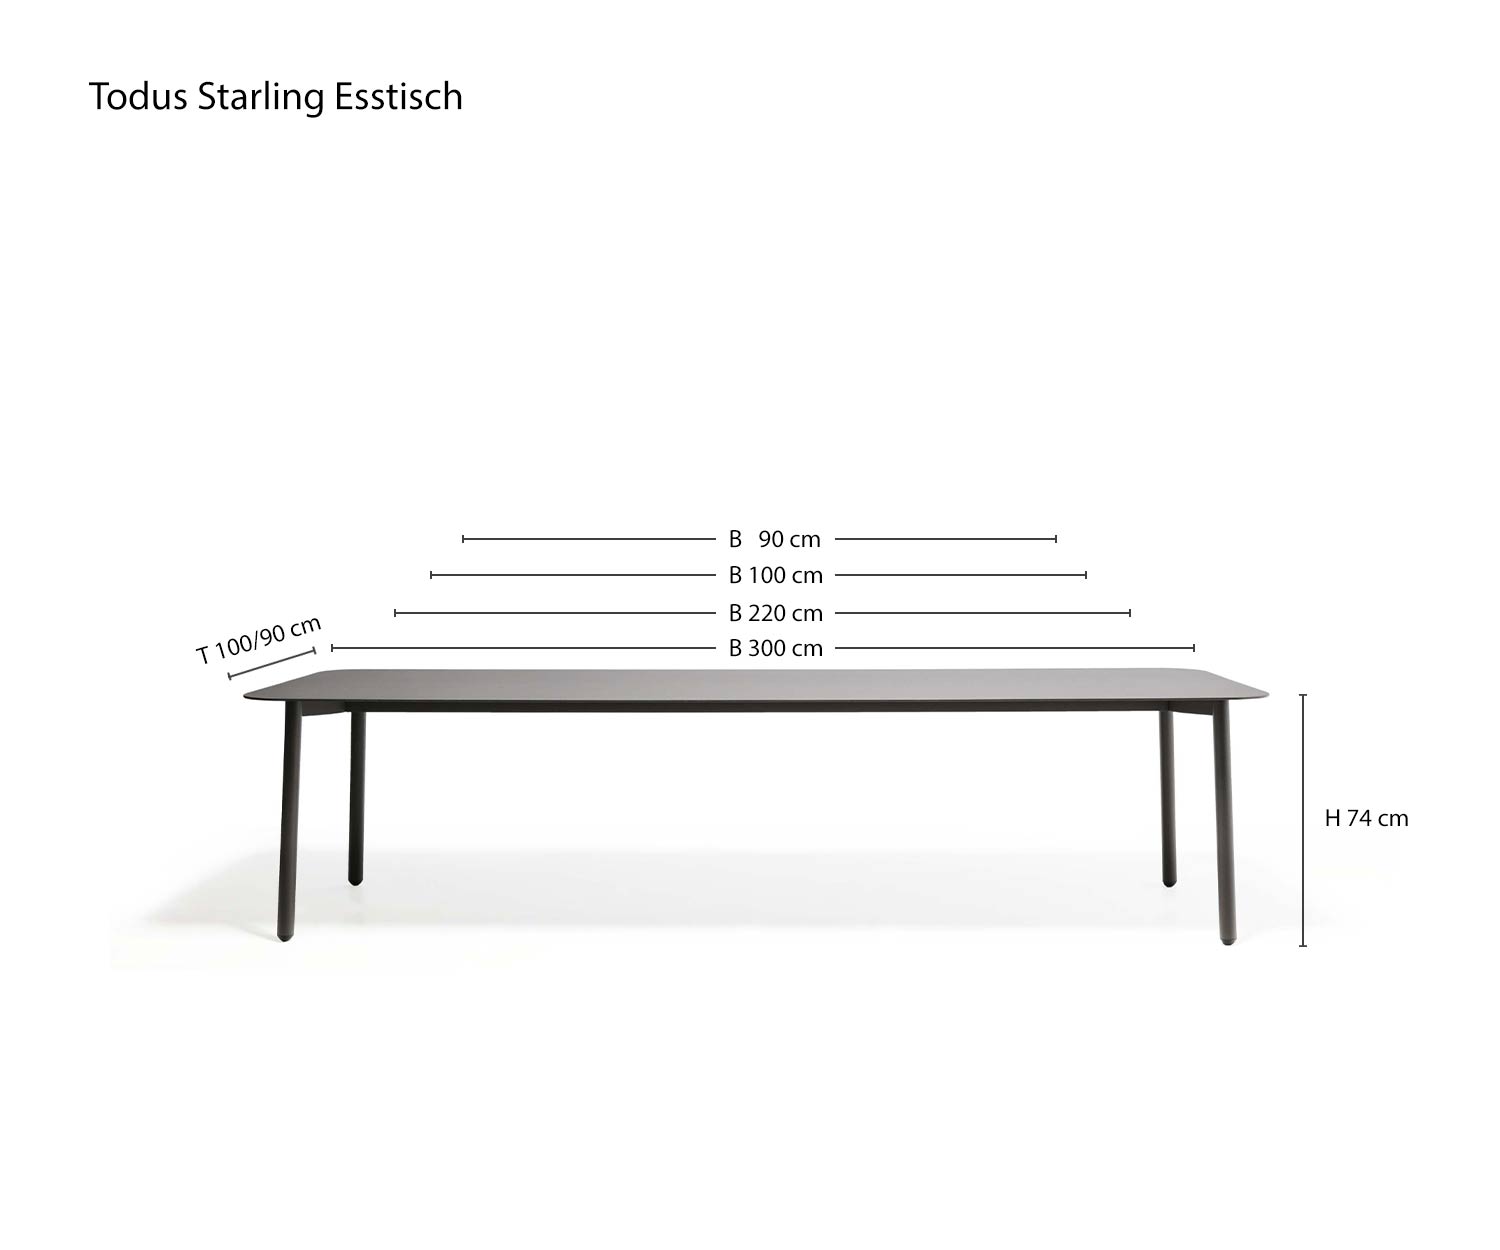 Dimensioni Tavolo da pranzo Starling Design per il giardino